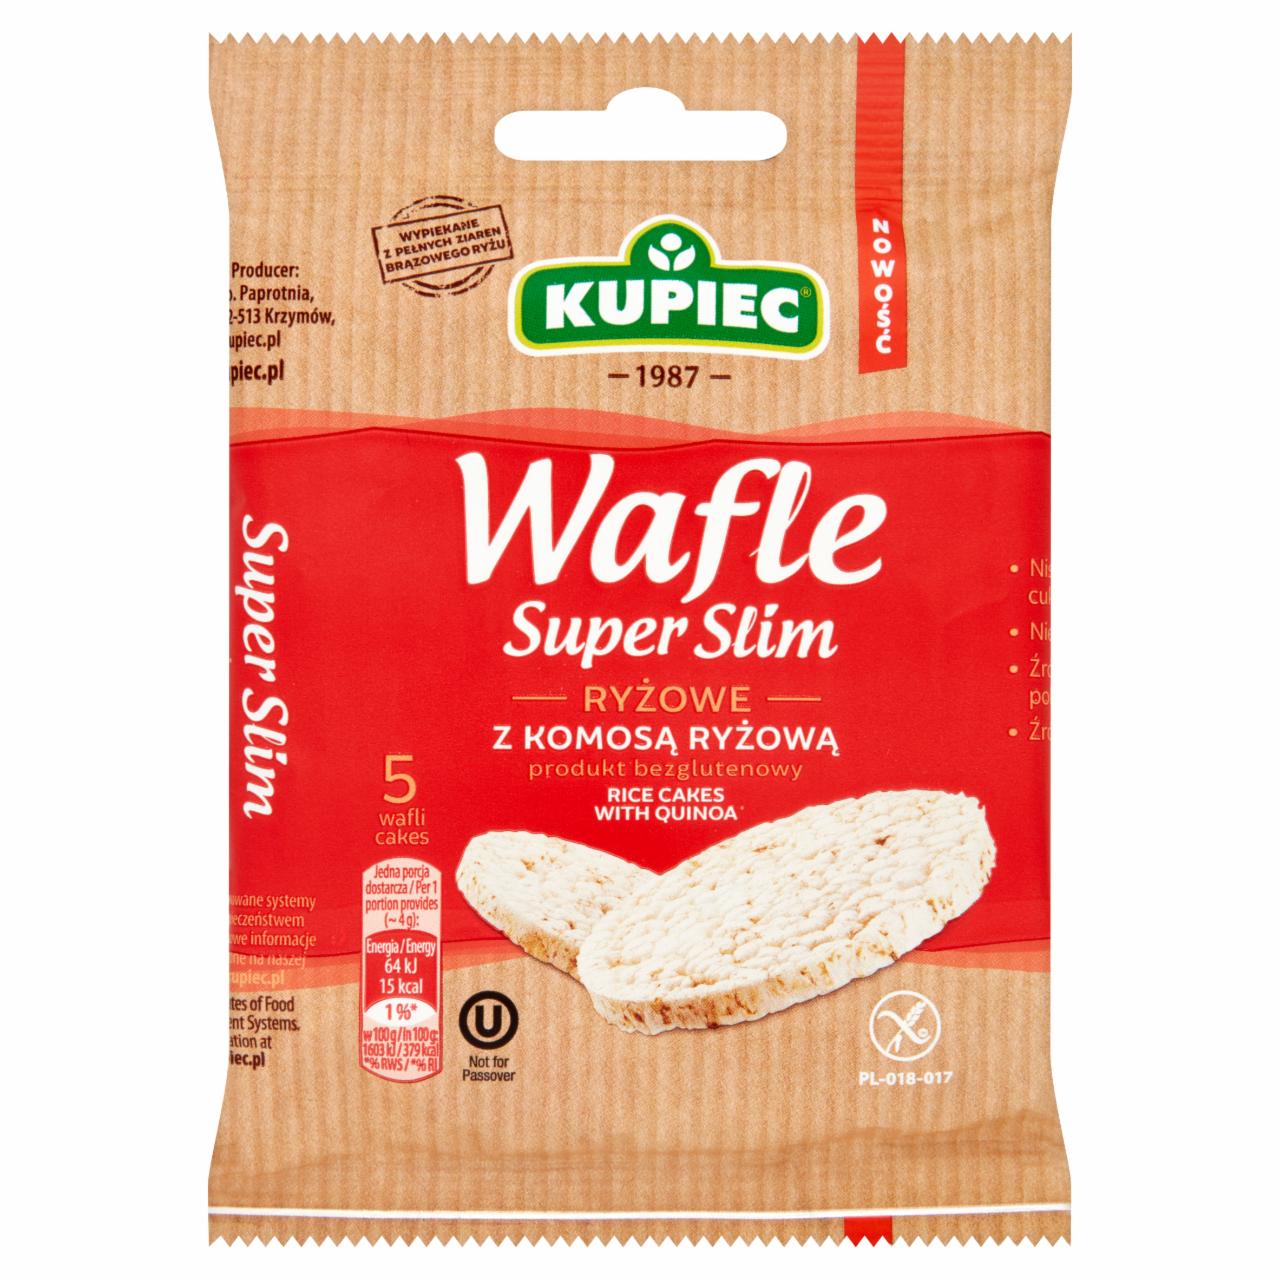 Zdjęcia - Kupiec Super Slim Wafle ryżowe z komosą ryżową 20 g (5 sztuk)